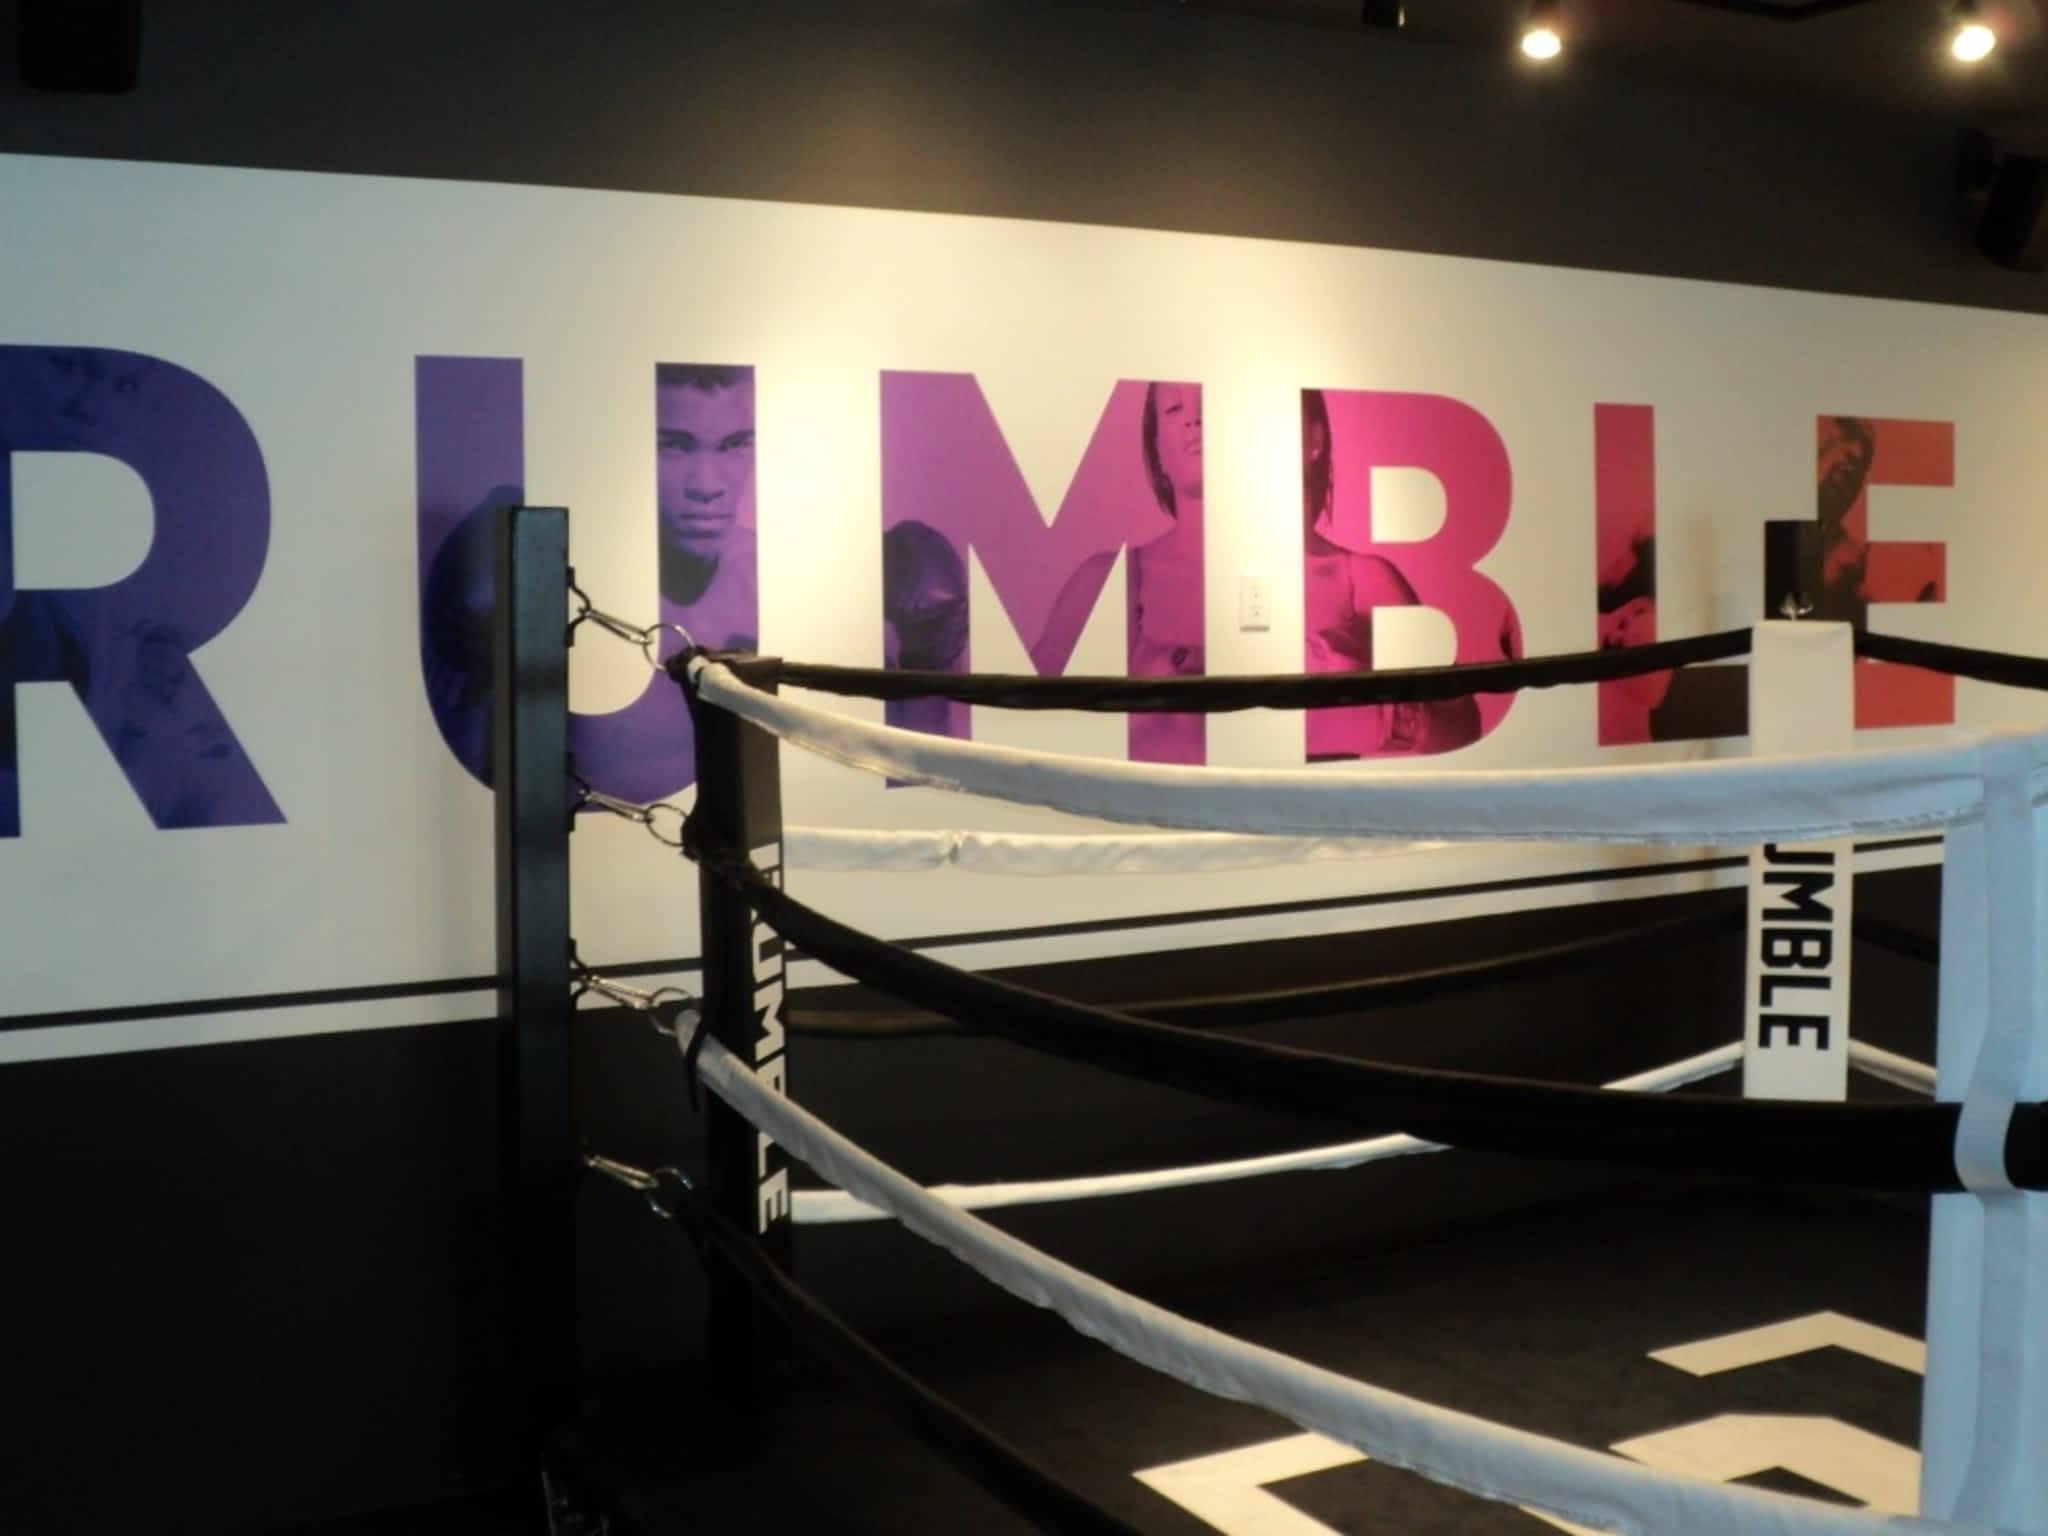 photo Rumble Boxing Studio